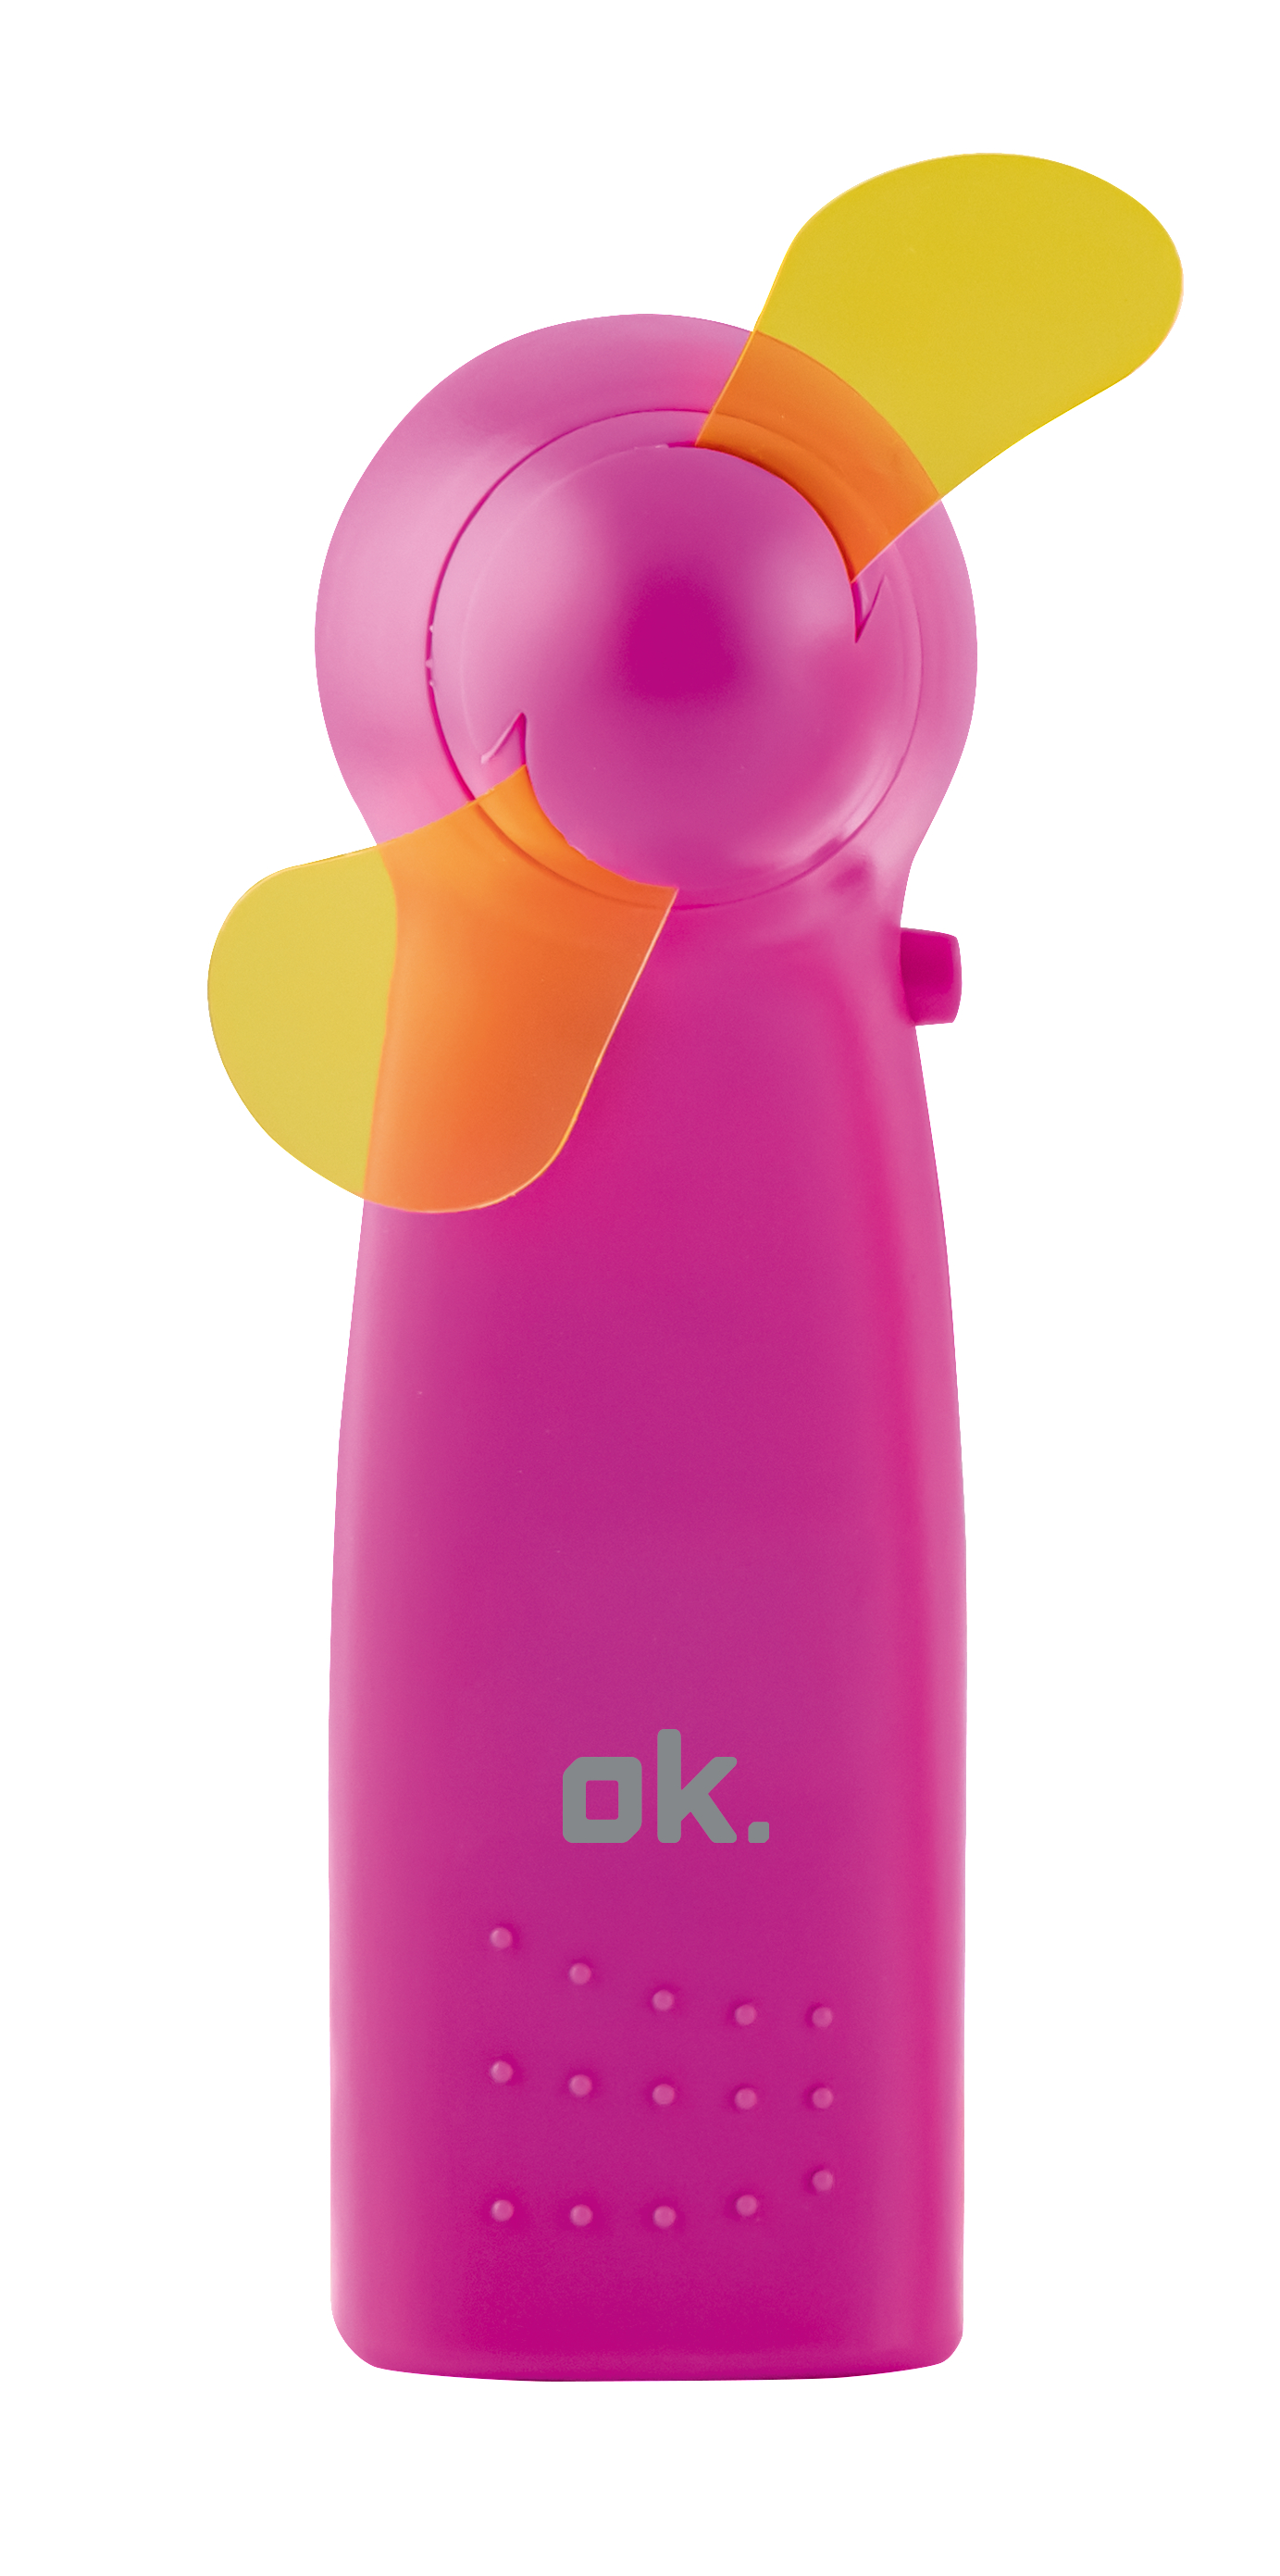 Türkis OK. Handventilator Farbauswahl OHF Watt) (2,6 oder oder nicht Pink 122 Mini möglich/Gelb